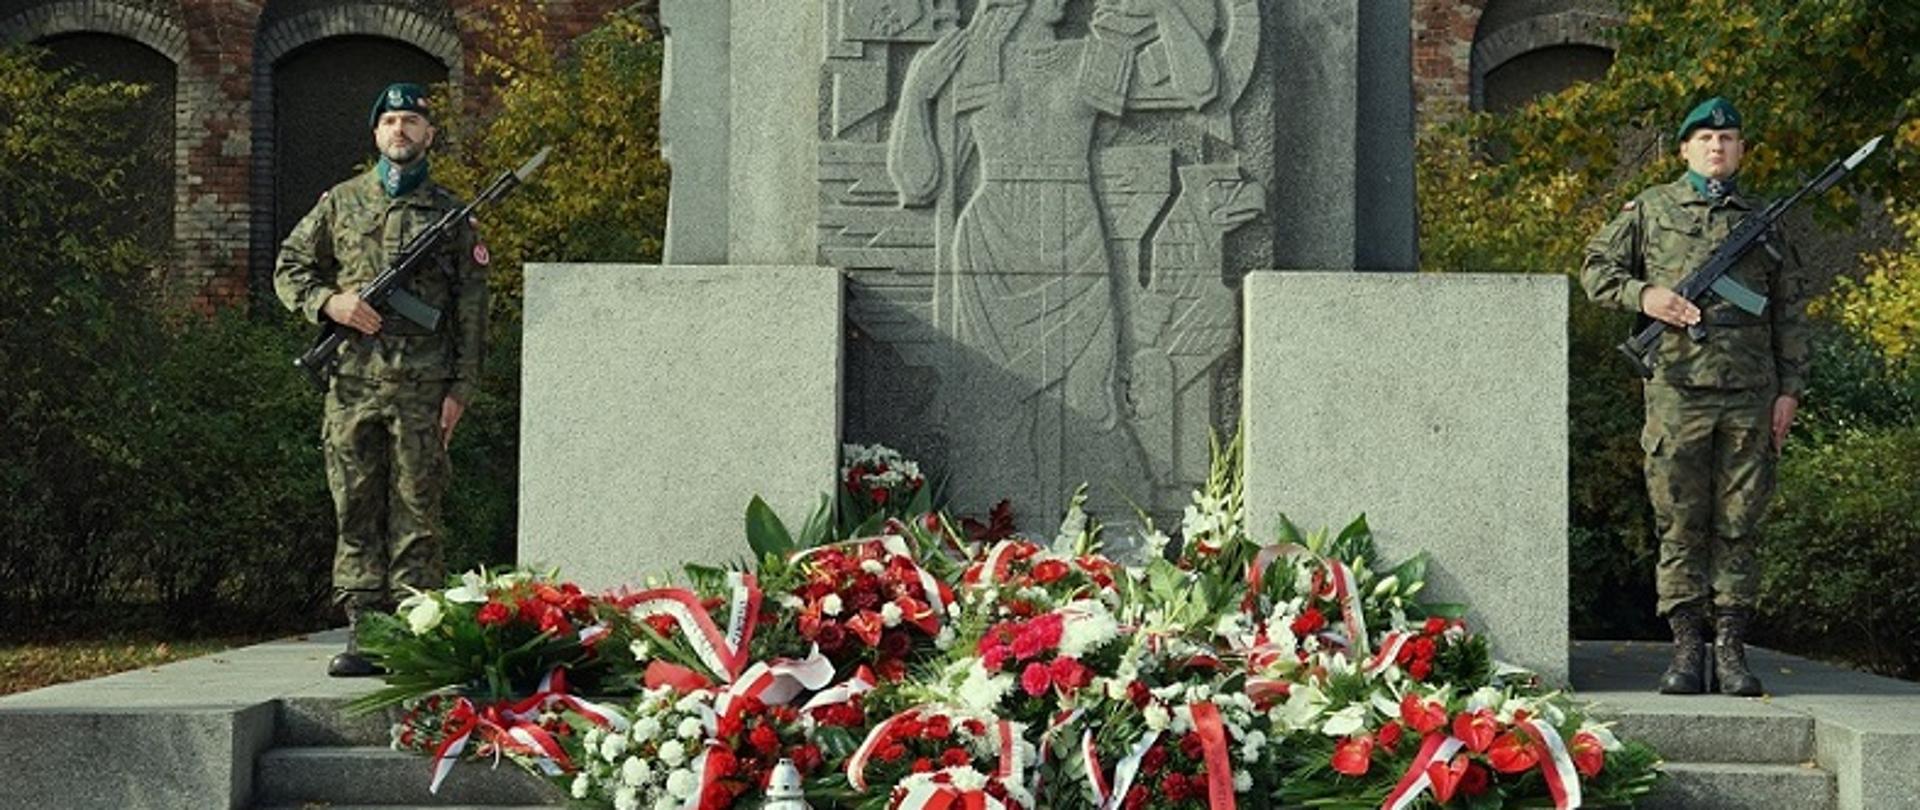 pomnik przy którym stoi dwóch żołnierzy, warta, prxzed pomnikiem wiązanki biało czerwone